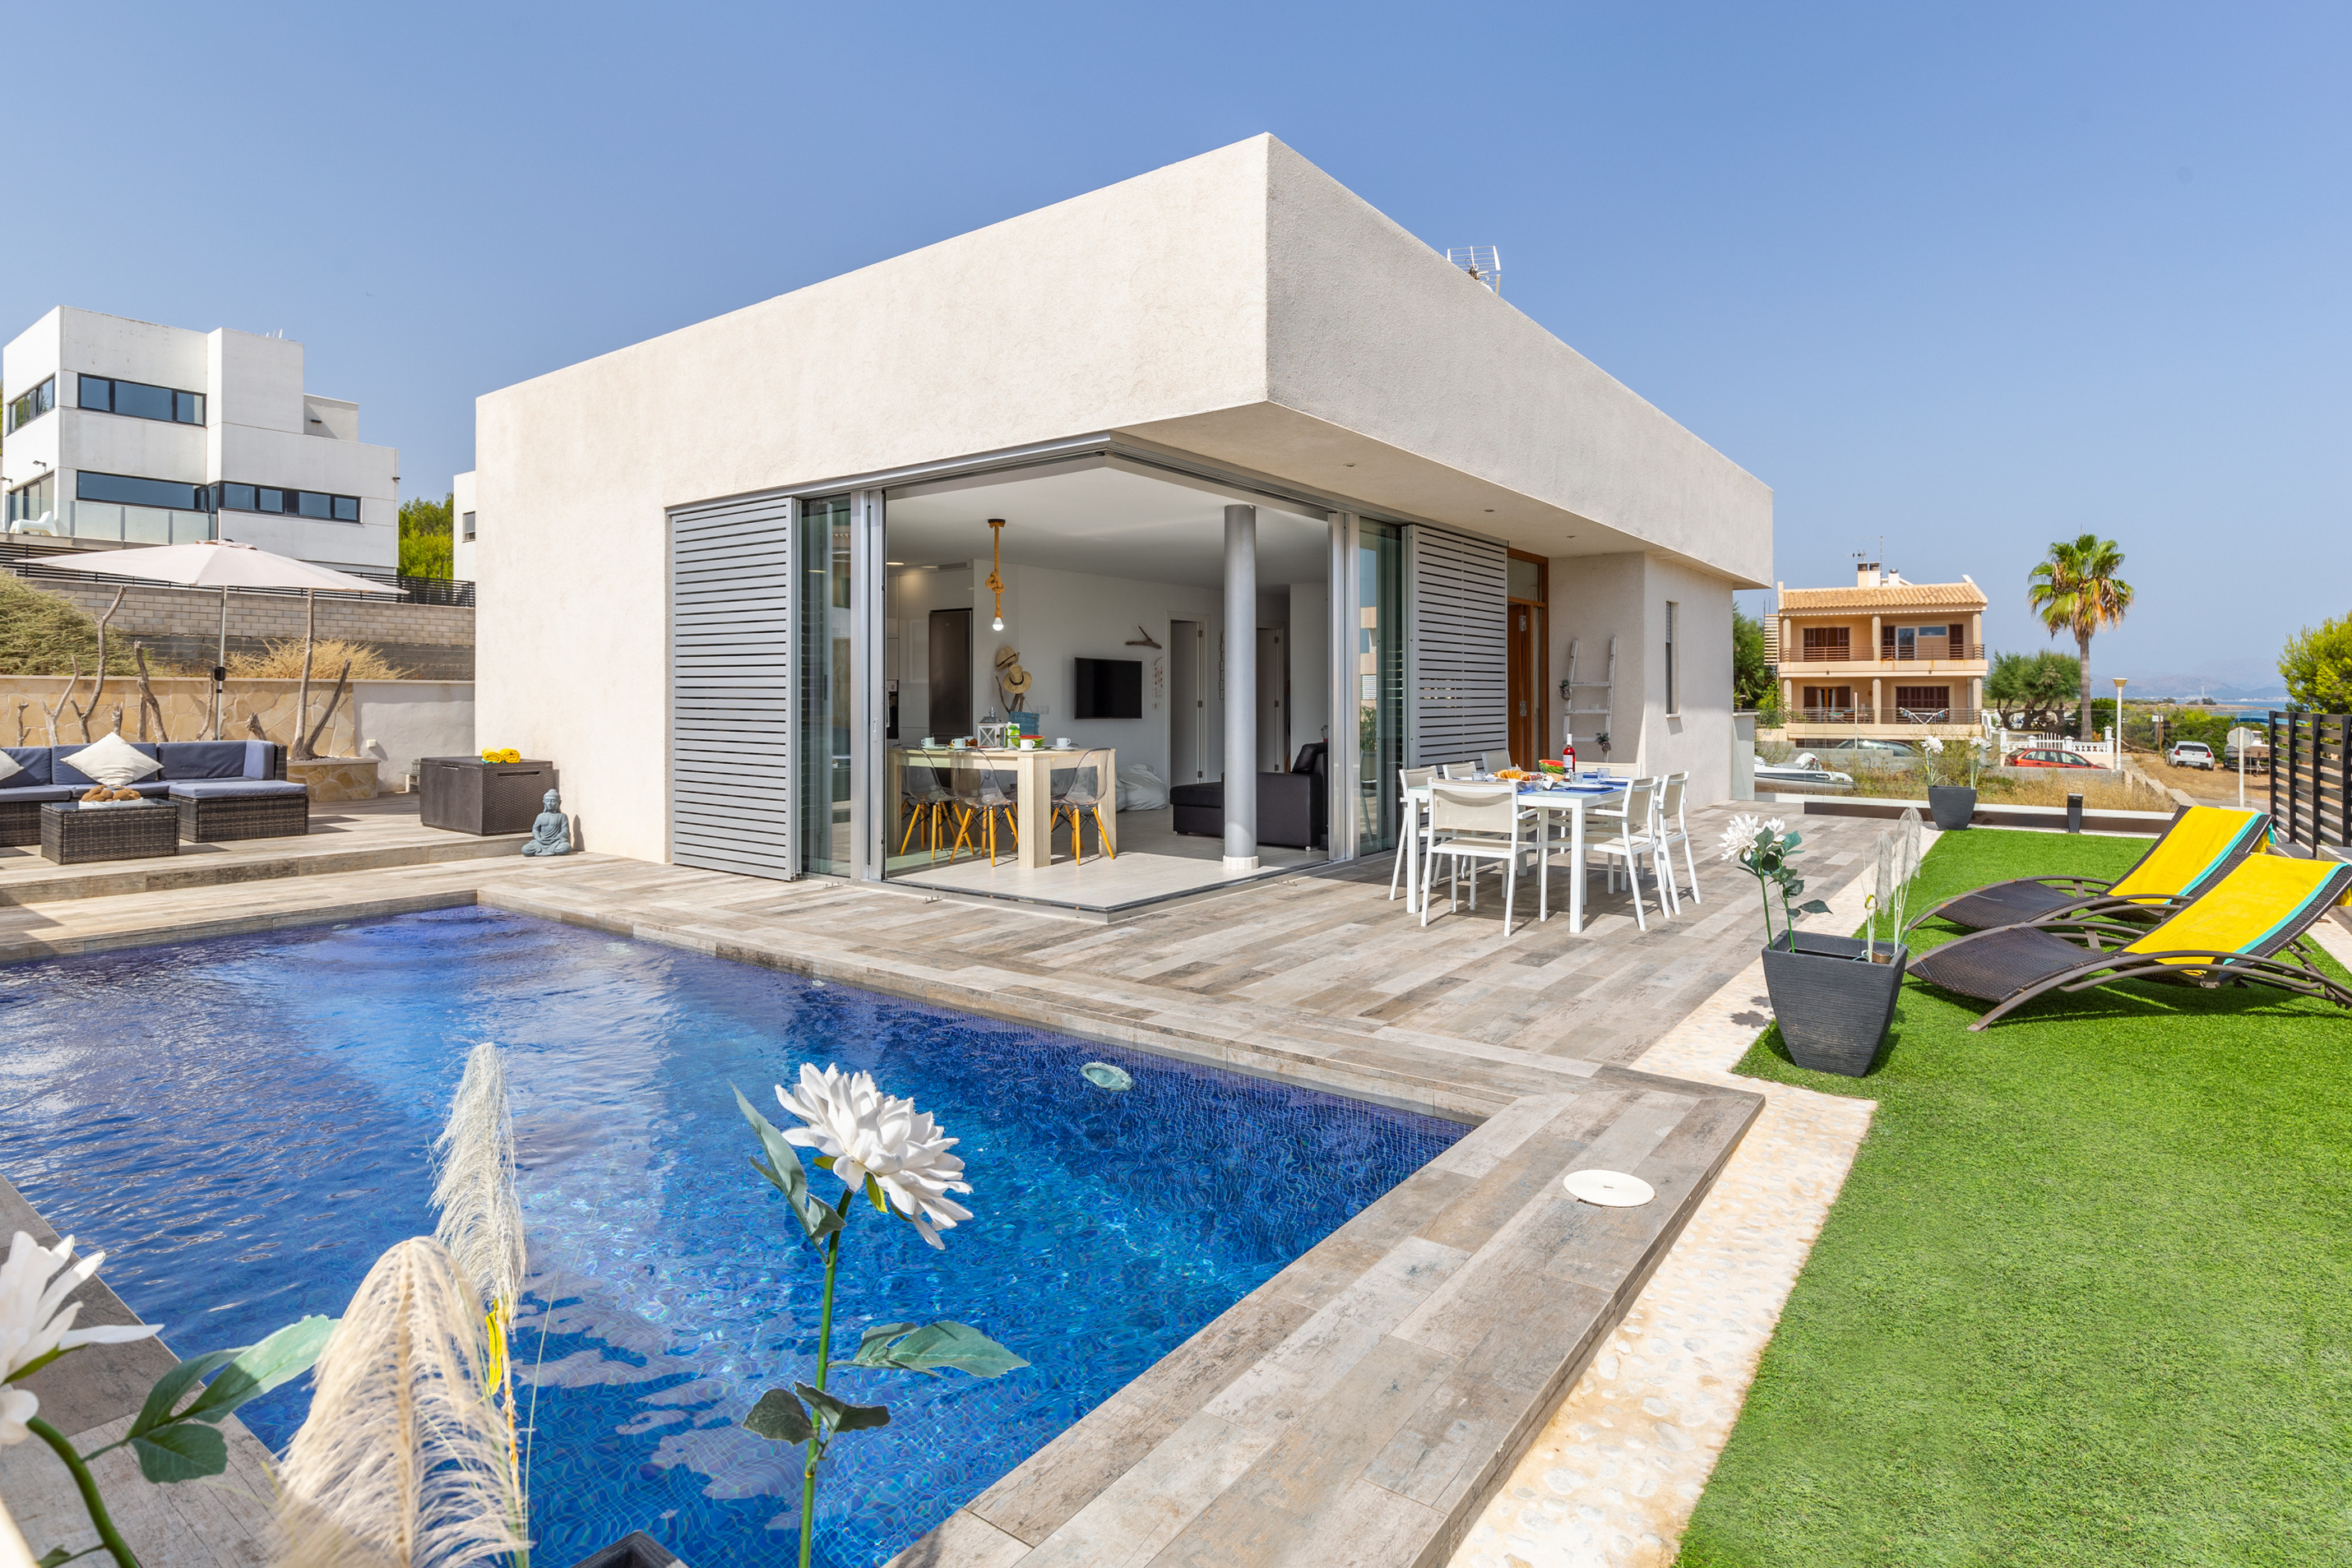 Modern boutique style Villa with pool Son Serra Ferienhaus in Spanien